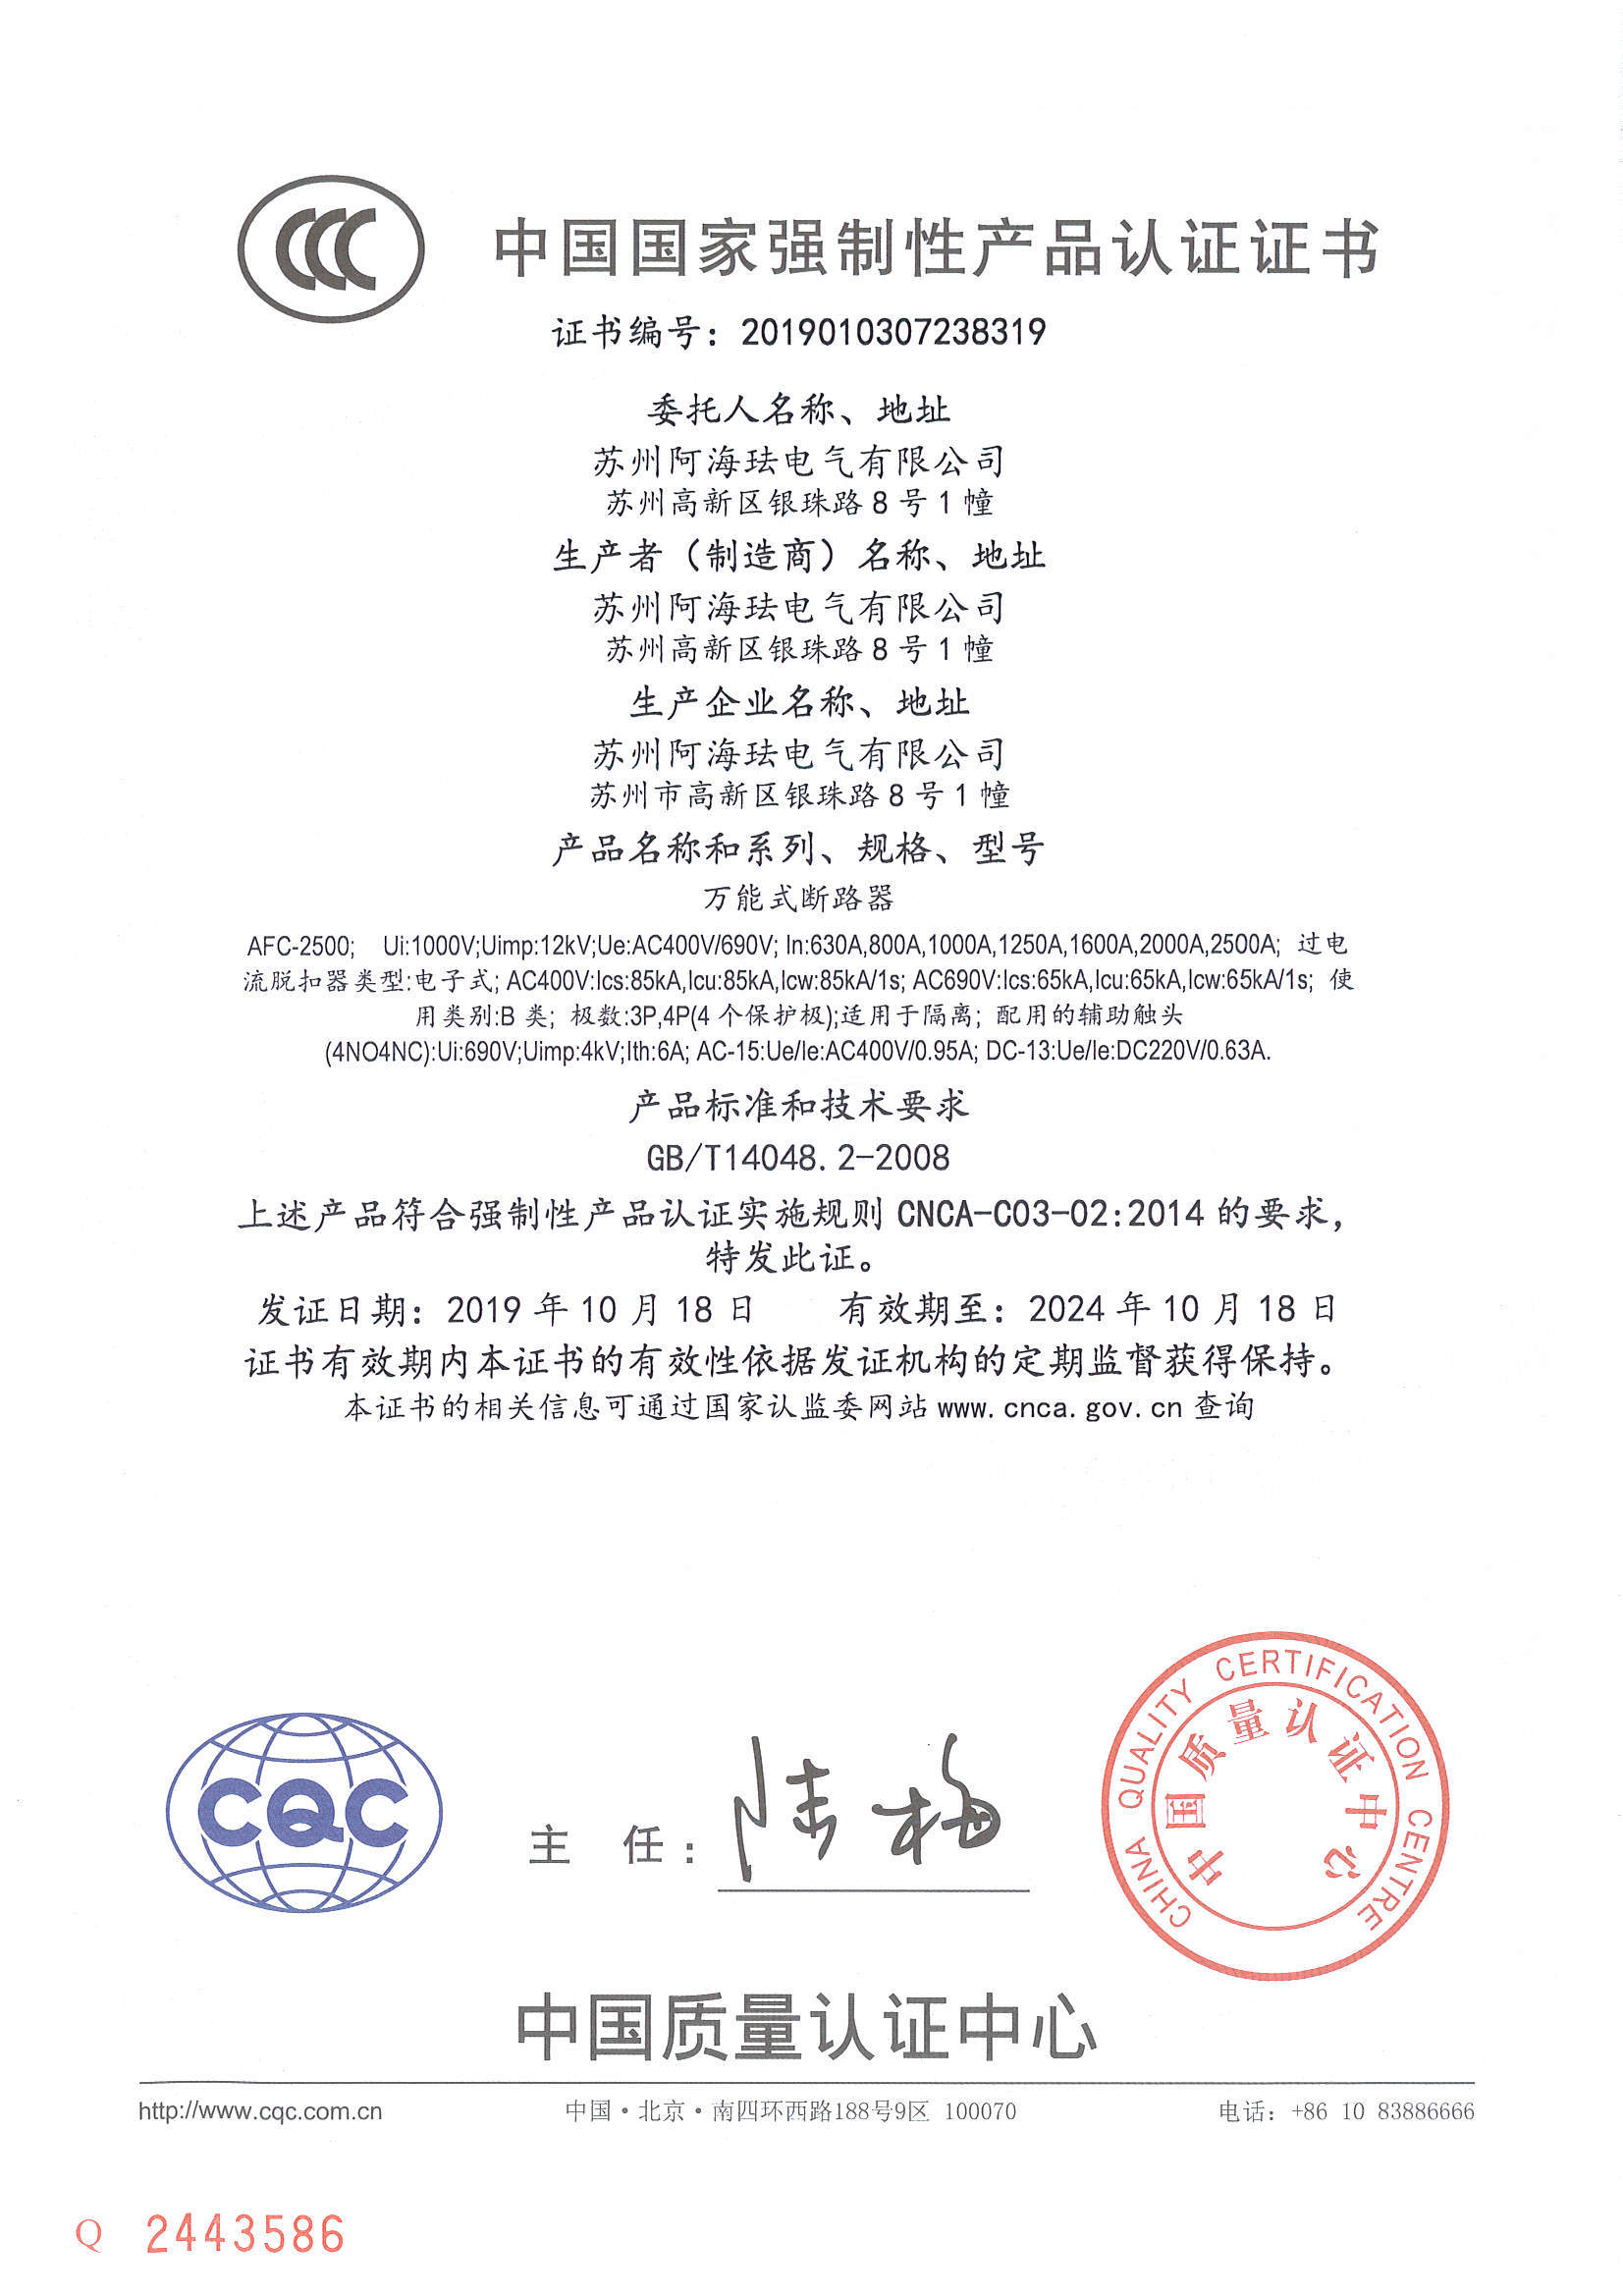 AFC2500 CCC certificate